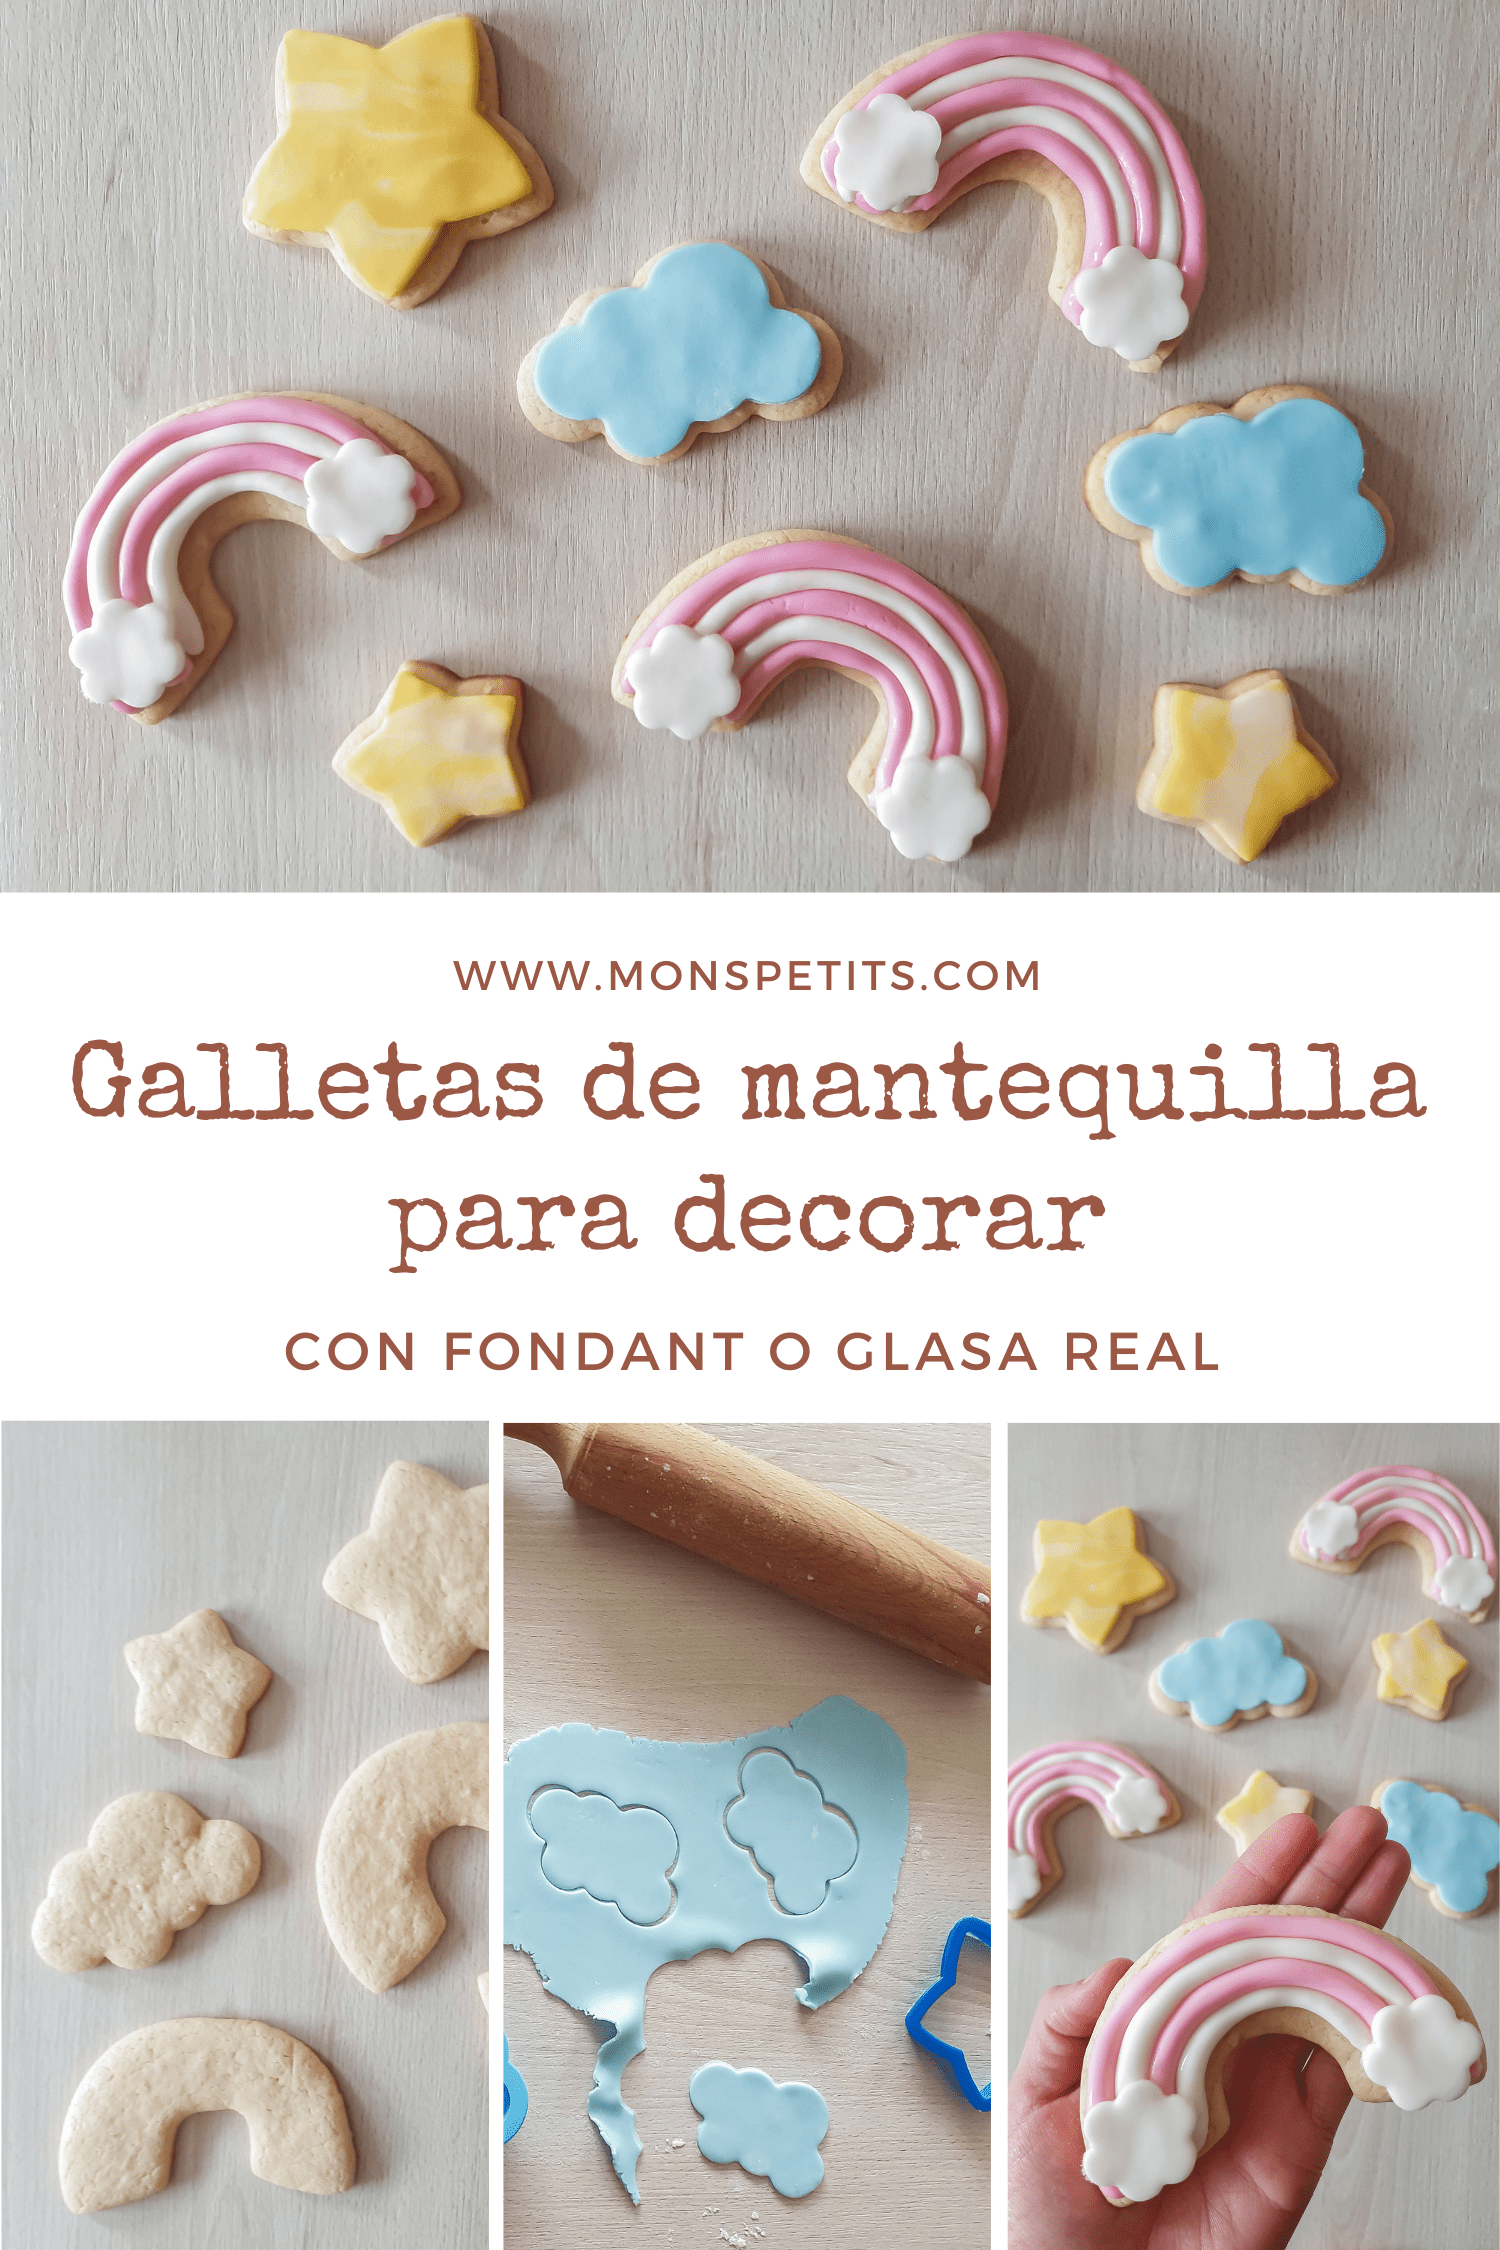 Receta galletas mantequilla para decorar con fondant o glasa - Homemade butter cookies - Royal Icing - Caseras PIN